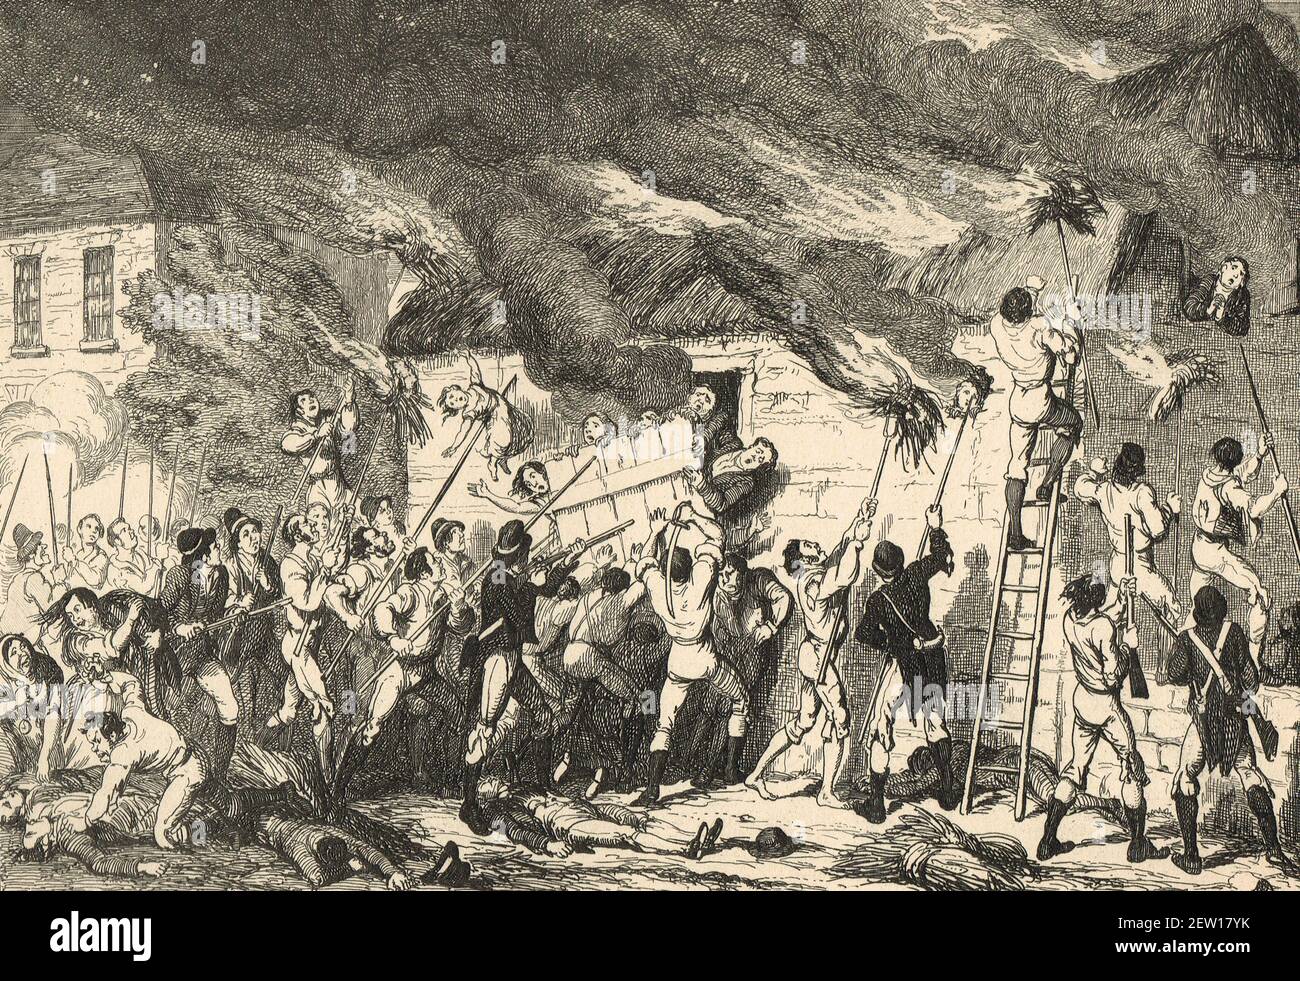 Das Massaker von Scullabogue in der Nähe von Newbawn, Grafschaft Wexford, 5. Juni 1798, ermordeten Aufständische Männer, Frauen und Kinder, von denen die meisten protestantisch waren, in einer Scheune gefangen gehalten, die dann angezündet wurde, Während der irischen Rebellion von 1798 als Vergeltung für das britische Militär Feuer auf ein Haus mit Verwundeten in der nahe gelegenen Schlacht von New Ross Stockfoto